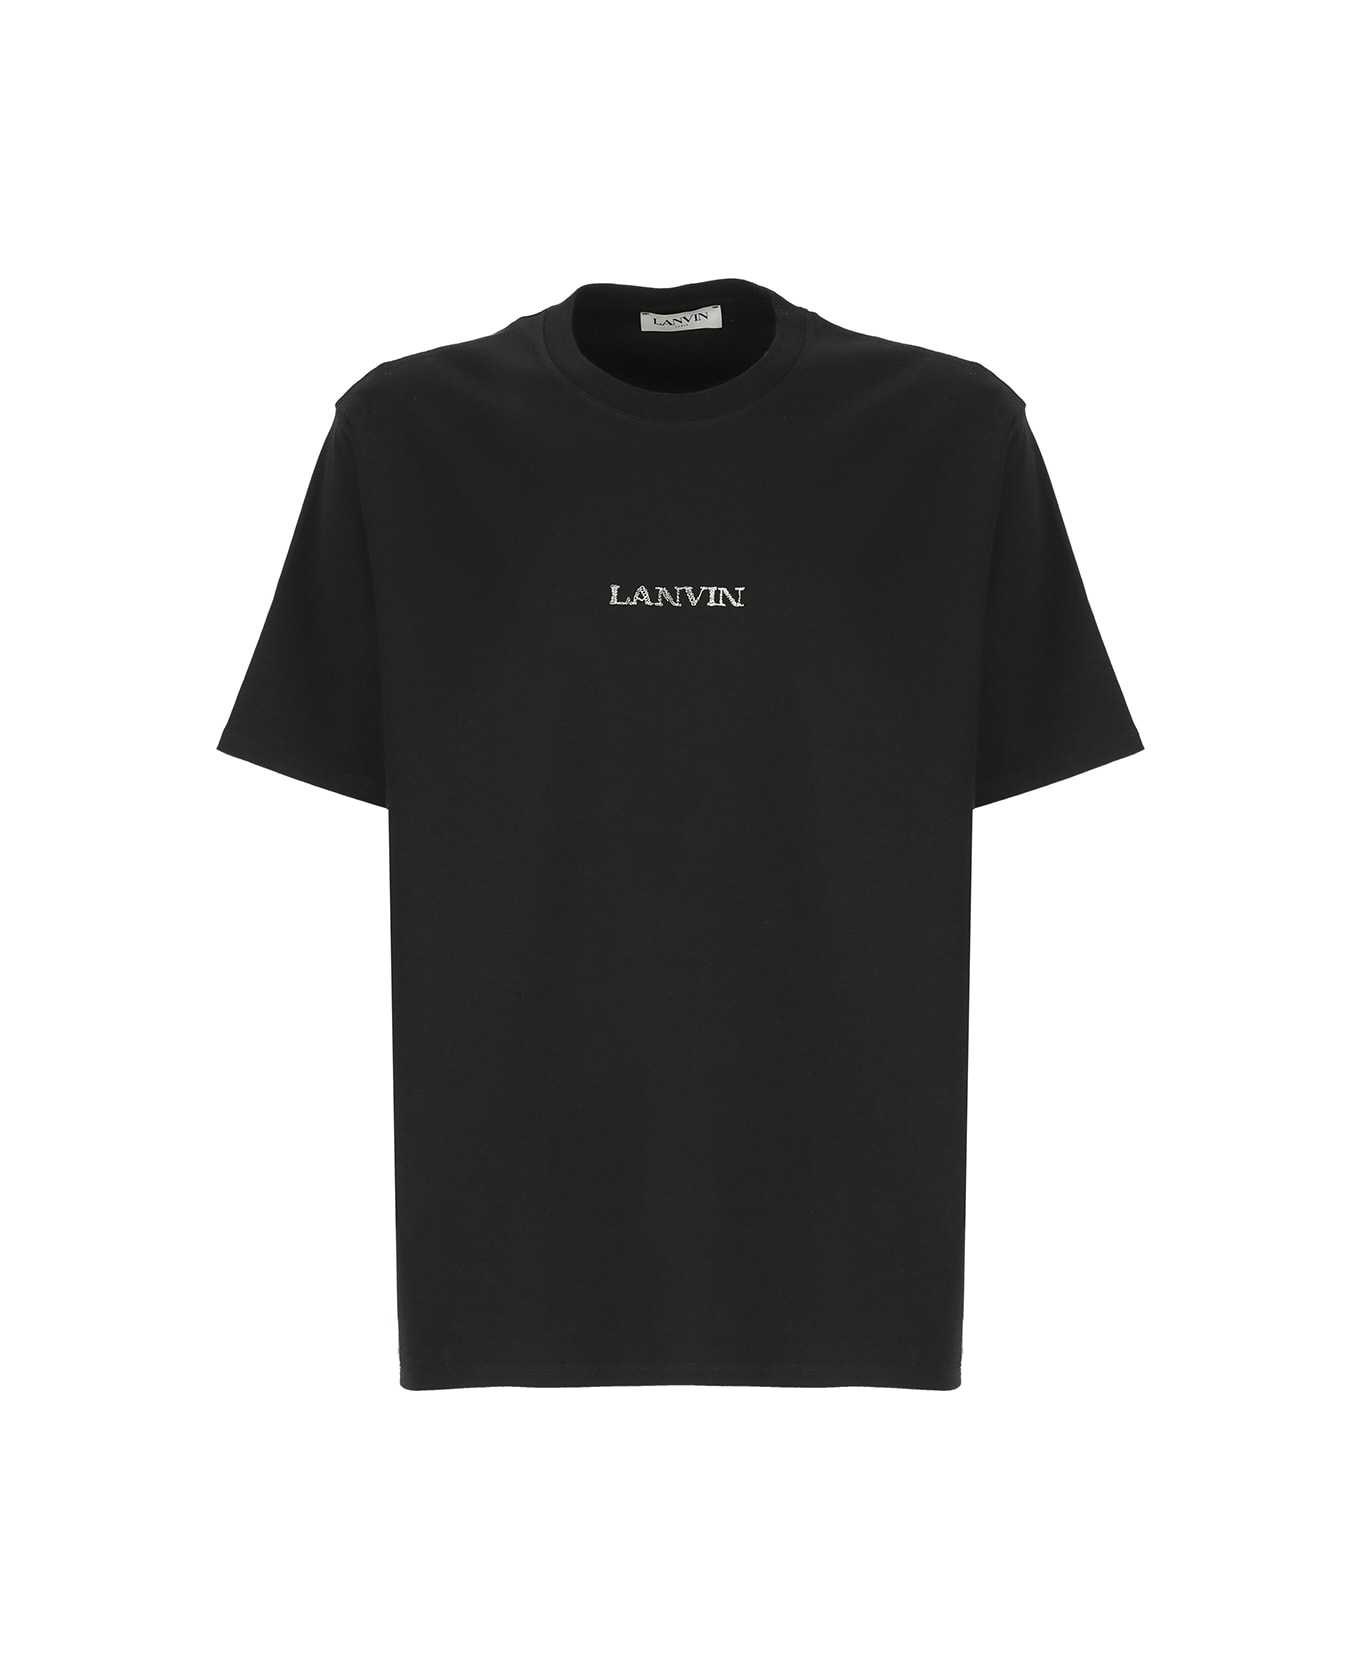 Lanvin Cotton T-shirt - Black